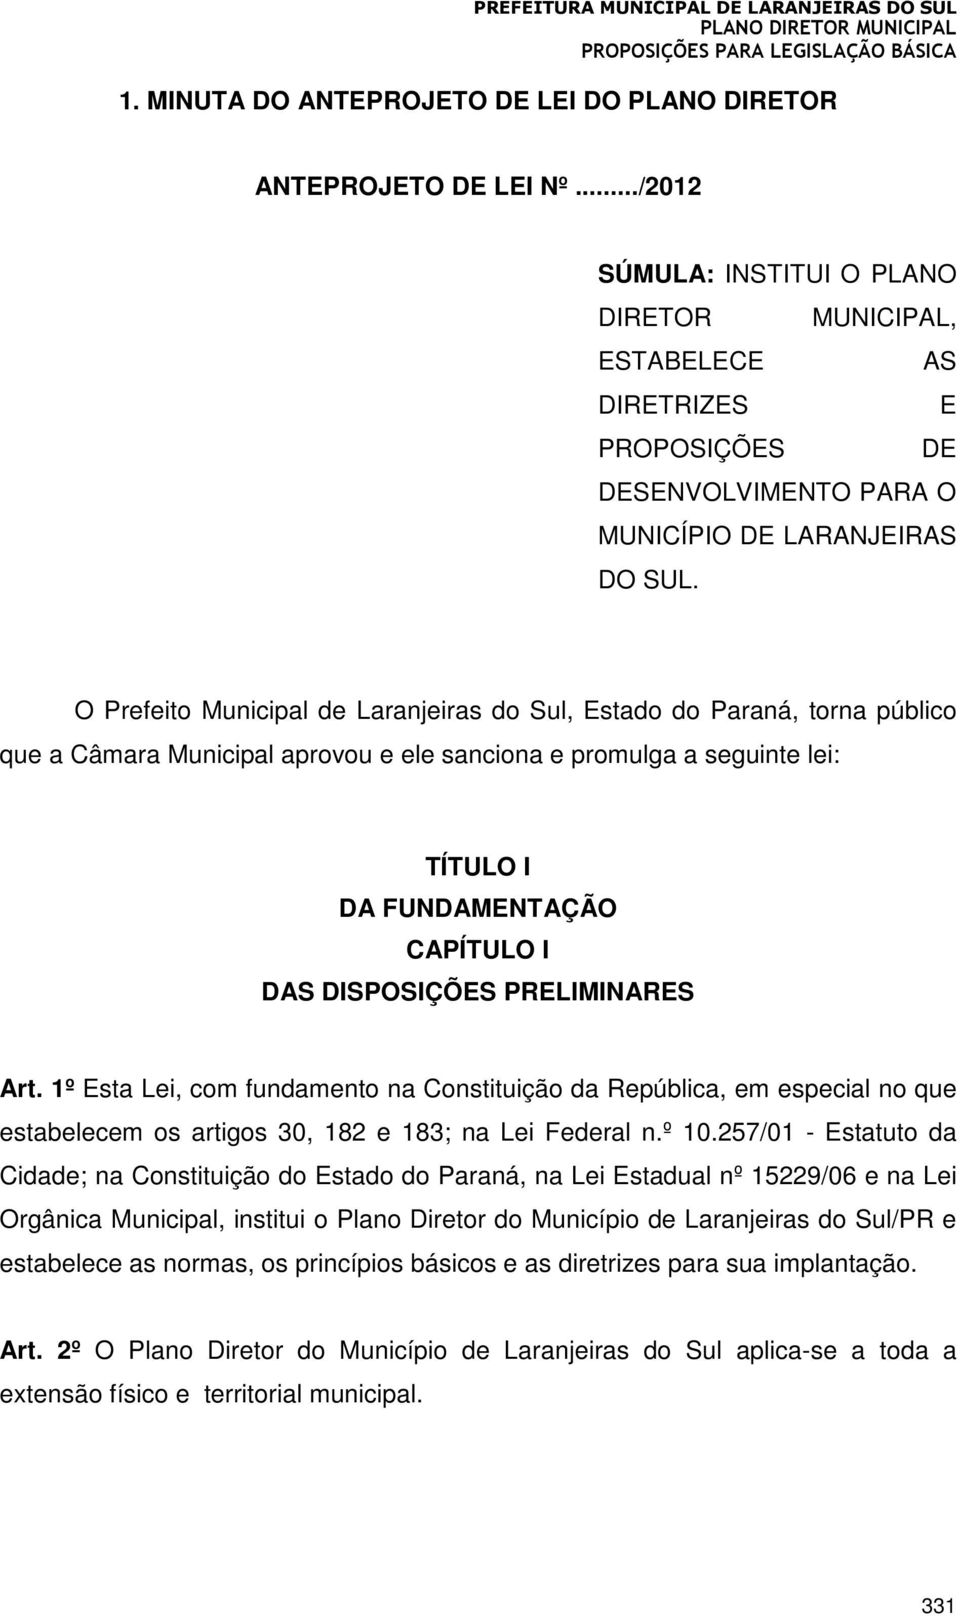 O Prefeito Municipal de Laranjeiras do Sul, Estado do Paraná, torna público que a Câmara Municipal aprovou e ele sanciona e promulga a seguinte lei: TÍTULO I DA FUNDAMENTAÇÃO CAPÍTULO I DAS